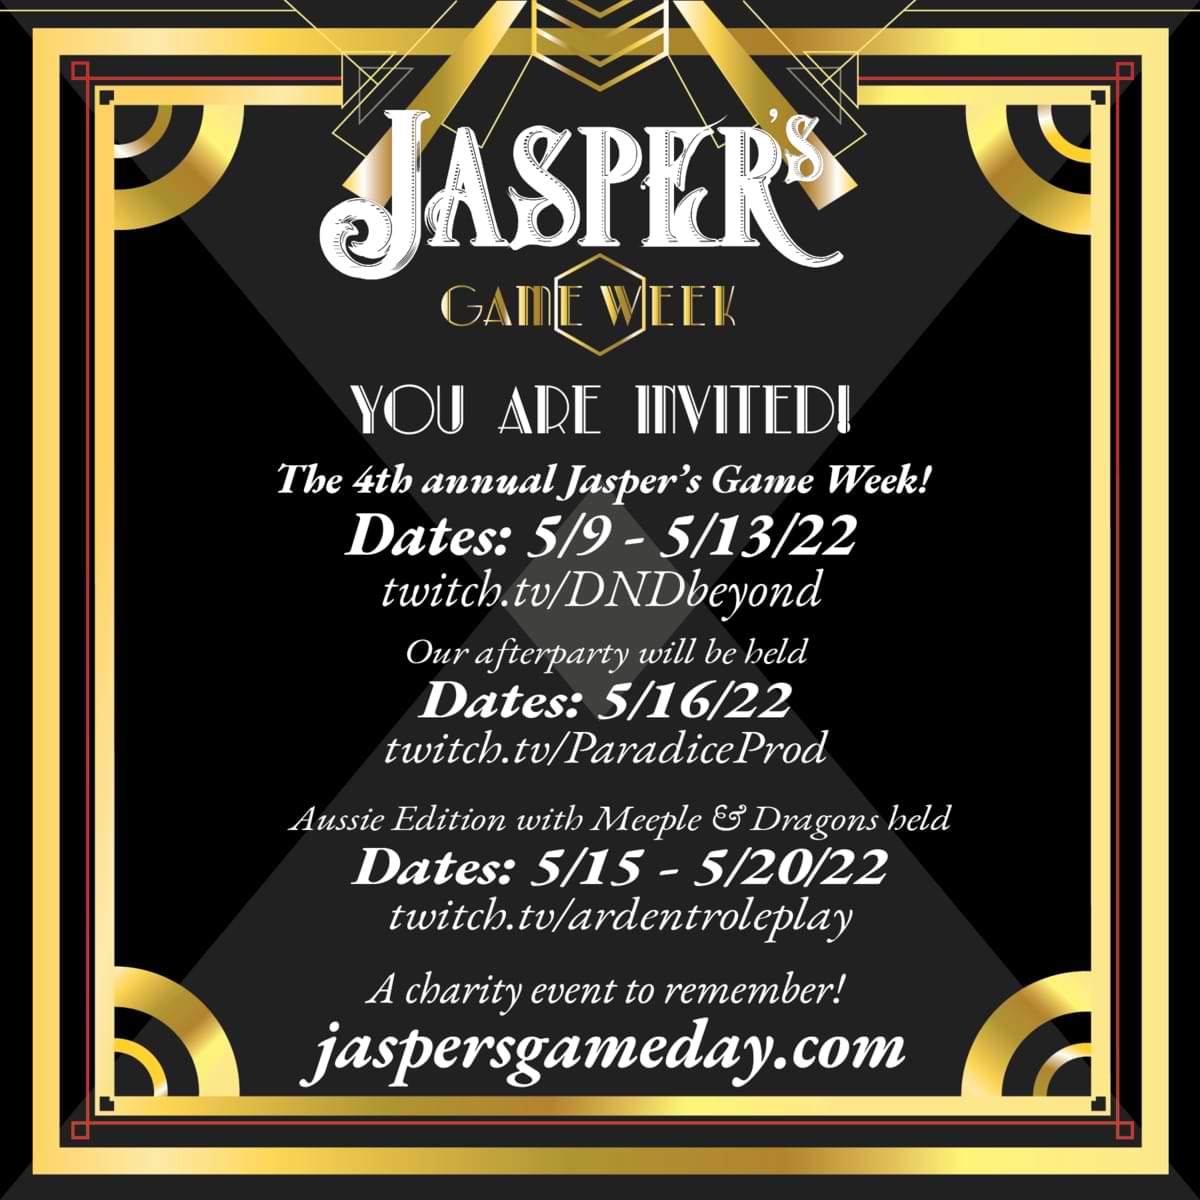 Invitation to Jasper's Game Week